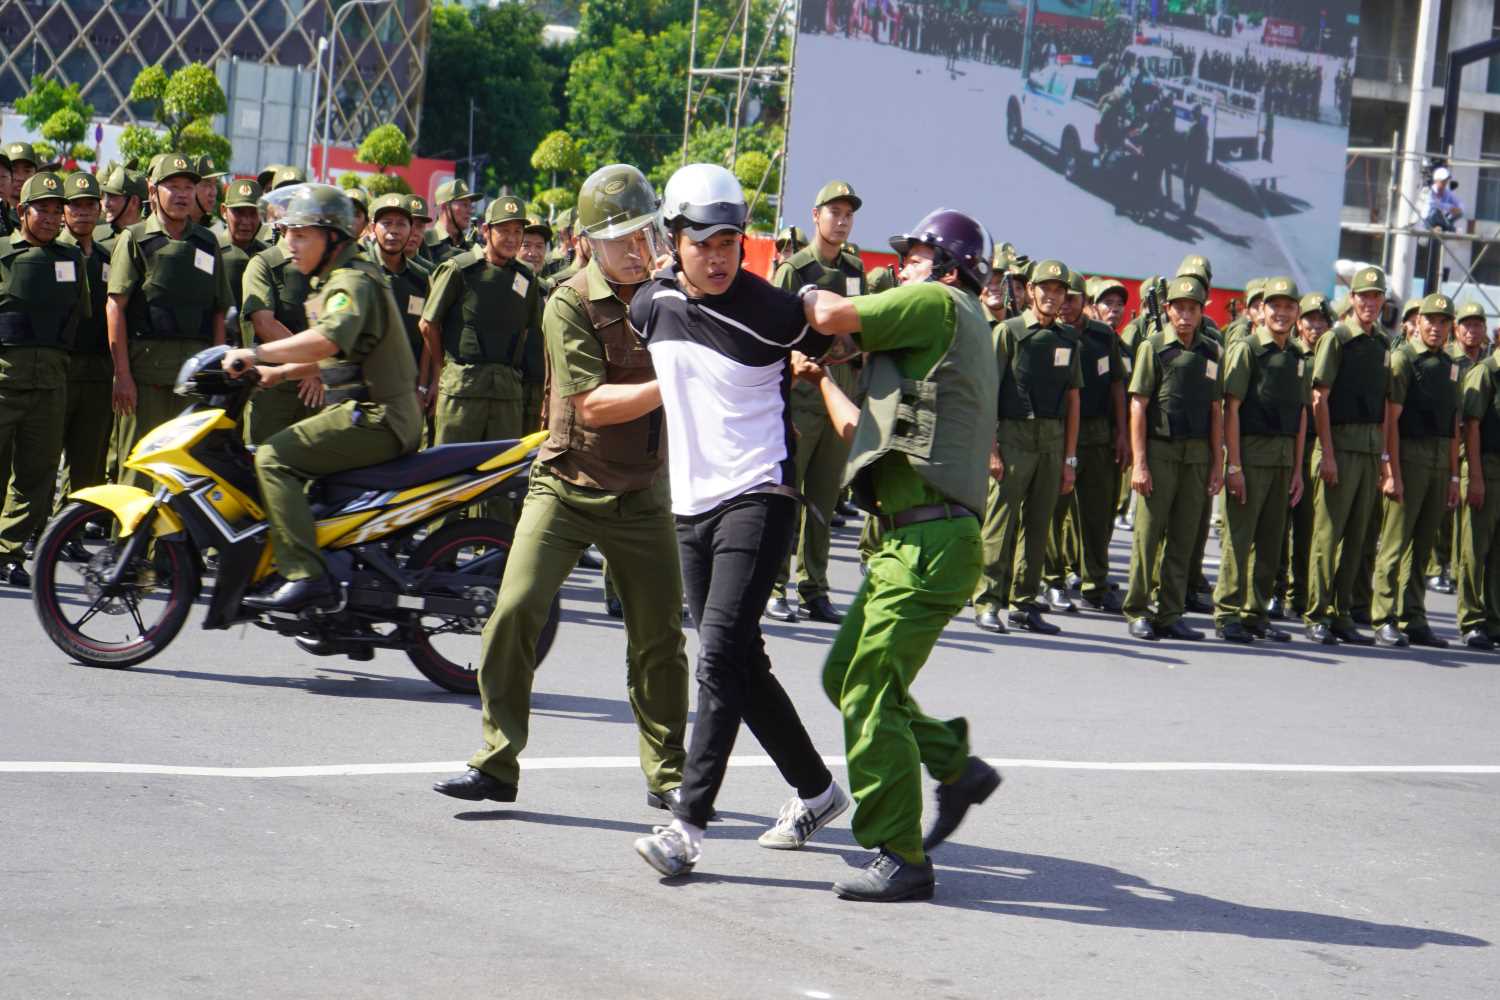 Lực lượng an ninh, trật tự ở cơ sở cùng lực lượng công an diễn tập trấn áp tội phạm tại buổi ra mắt.  Ảnh: Minh Quân